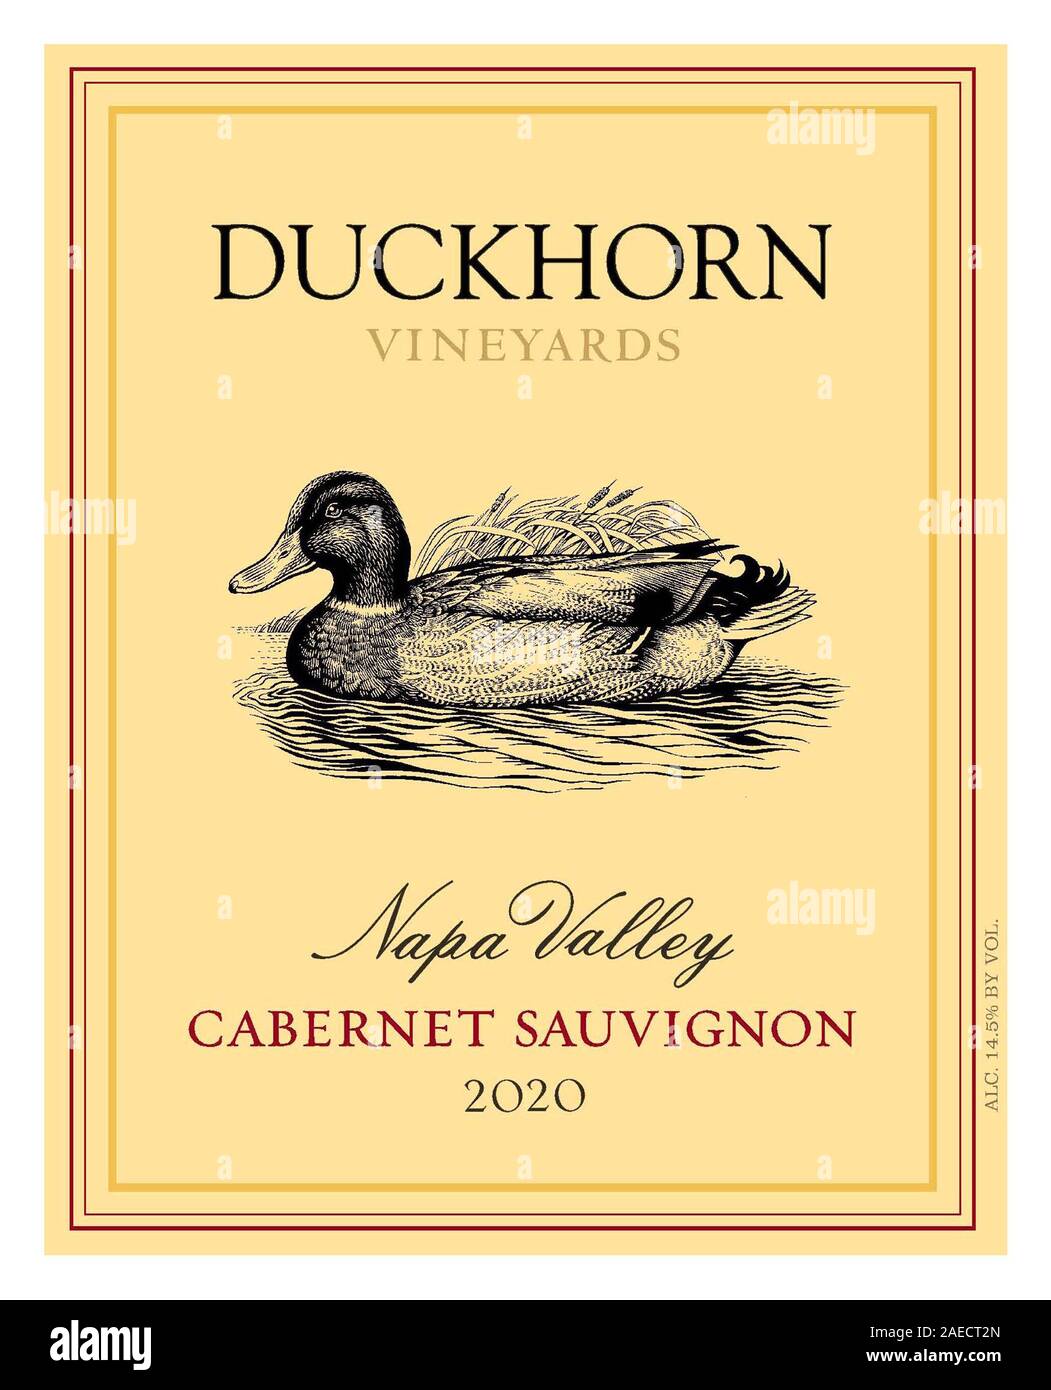 DUCKHORN Cabernet Sauvignon 2020 Vino tinto etiqueta de botella Valle de Napa California EE.UU. Foto de stock